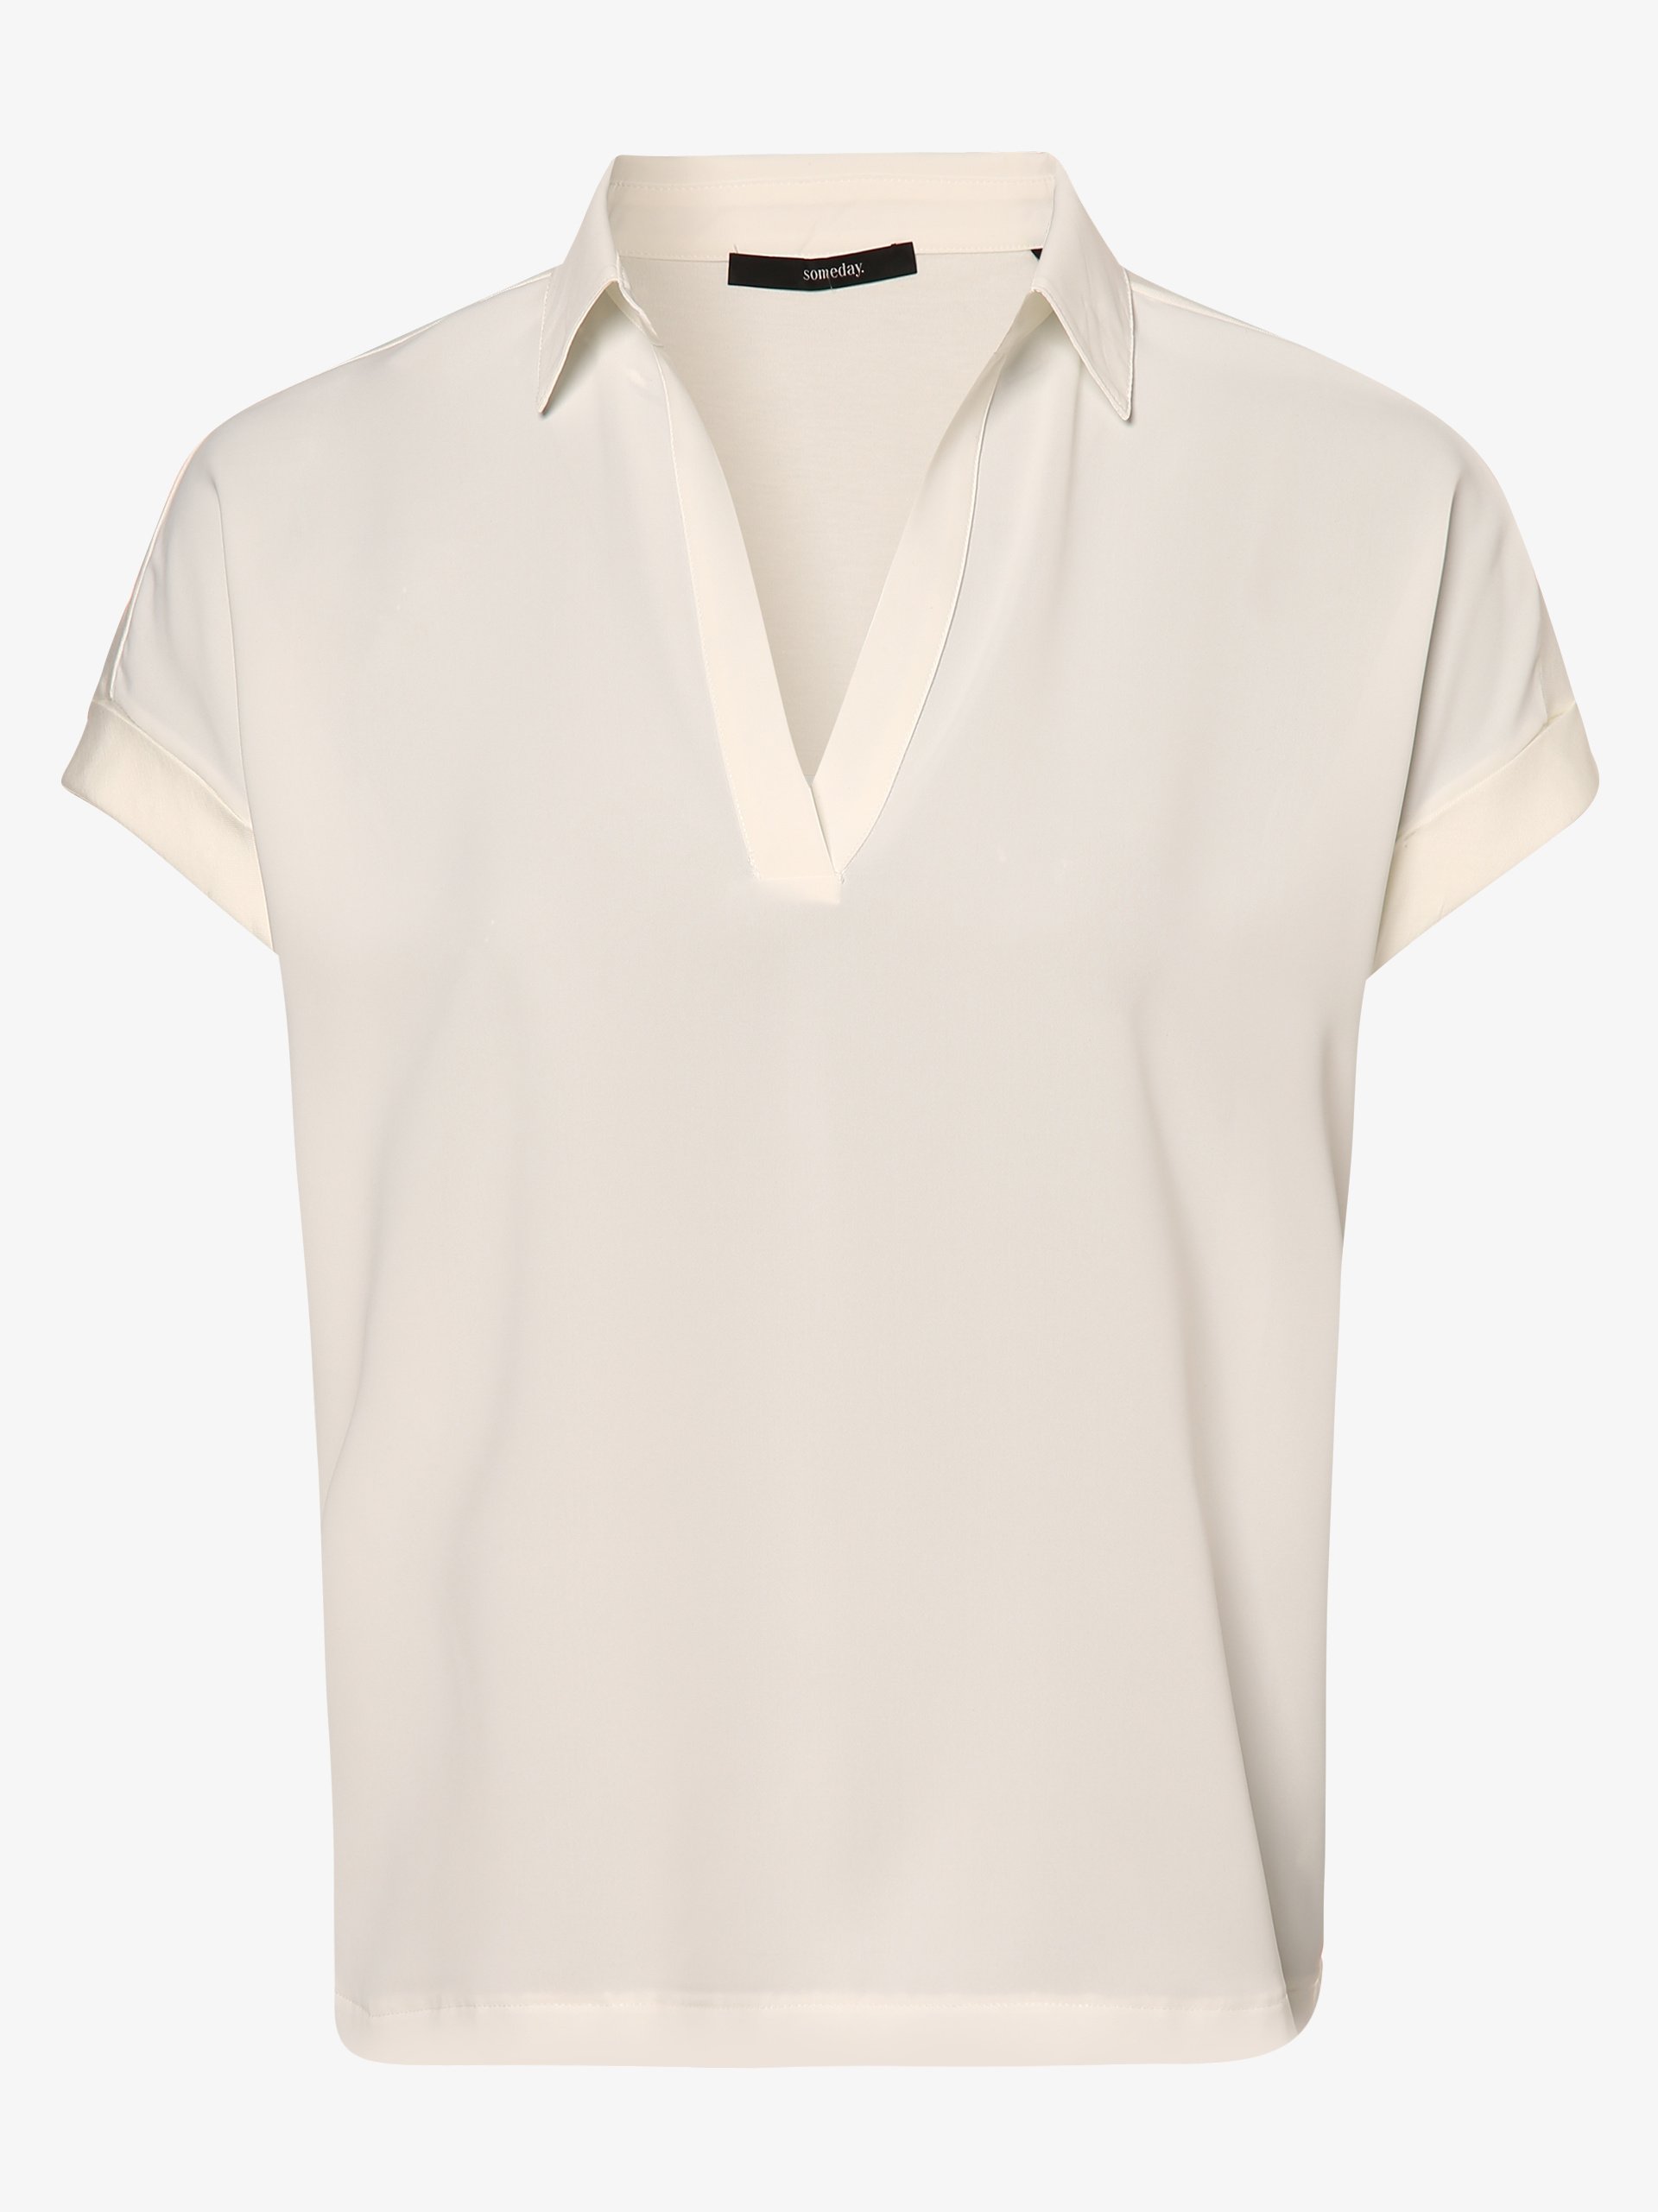 Someday Damen Blusenshirt - Kaltic online kaufen